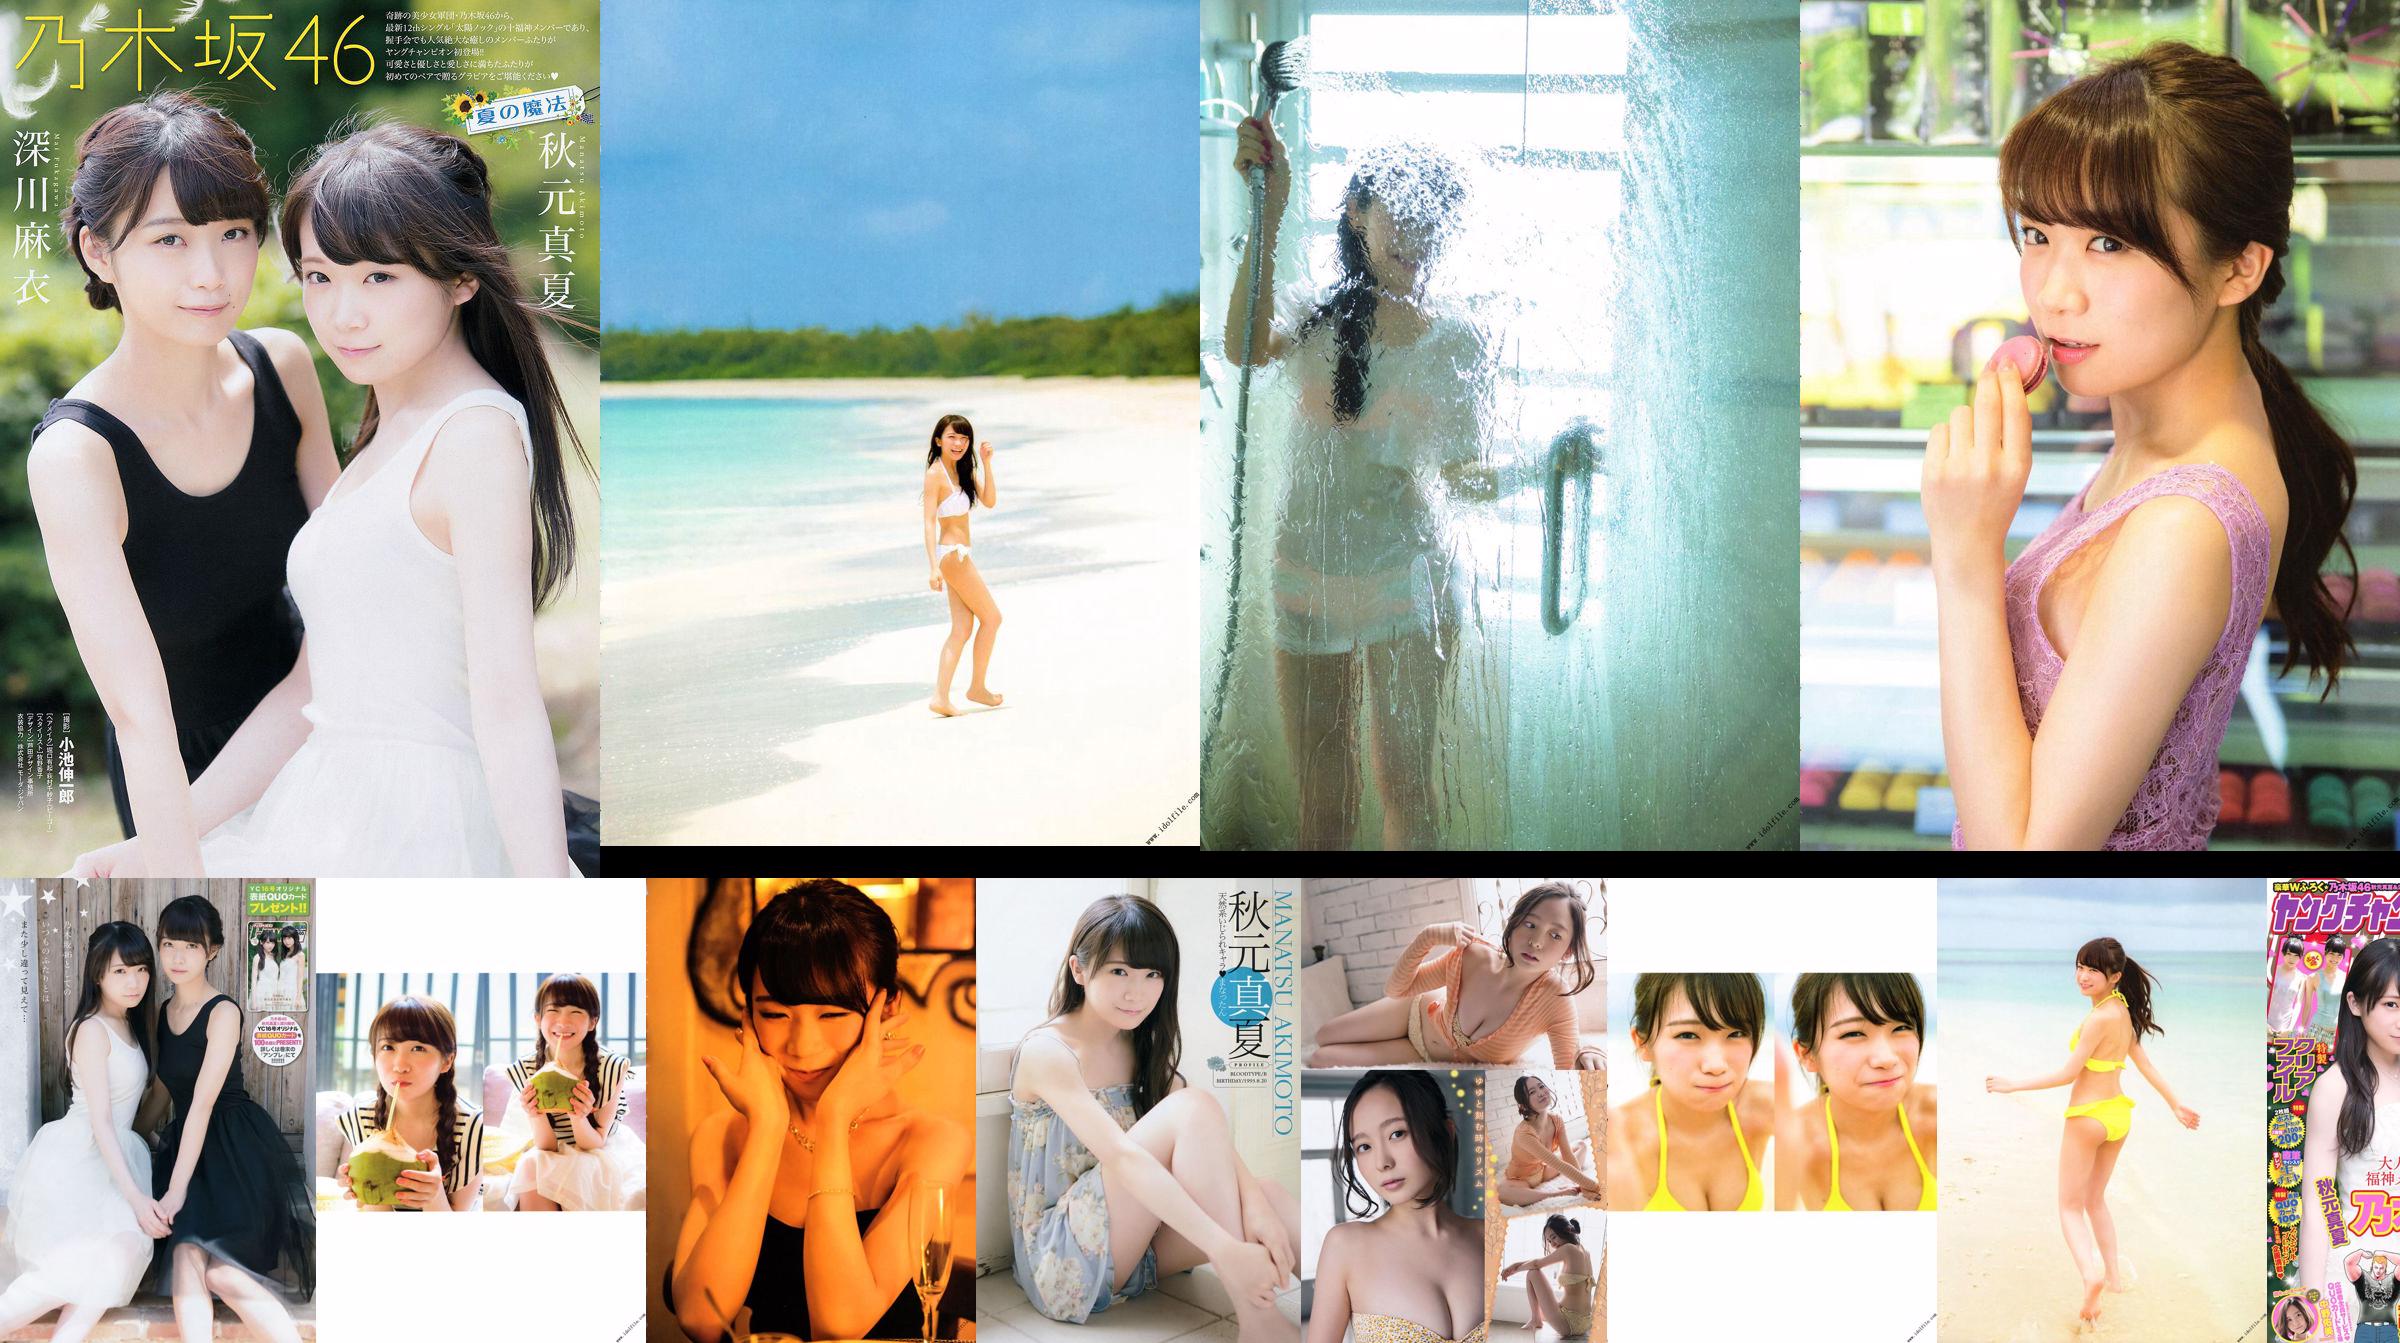 Akimoto Real Summer 1. "Real Summer No 気 圧 Konfiguration" [PhotoBook] No.245b1b Seite 29